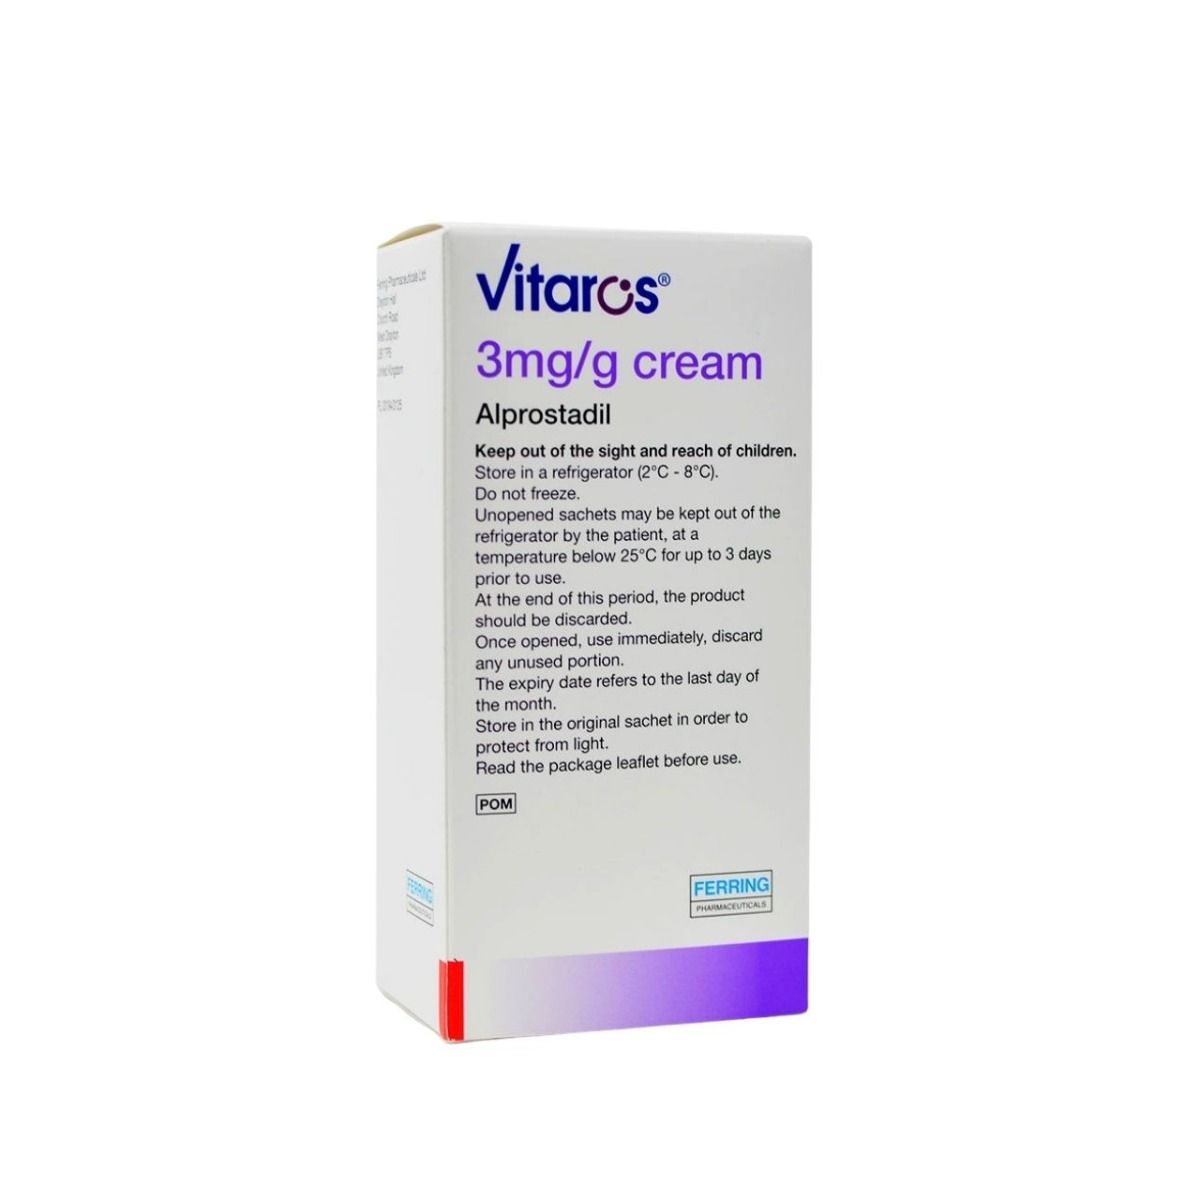 Vitaros / Aprostadil cream